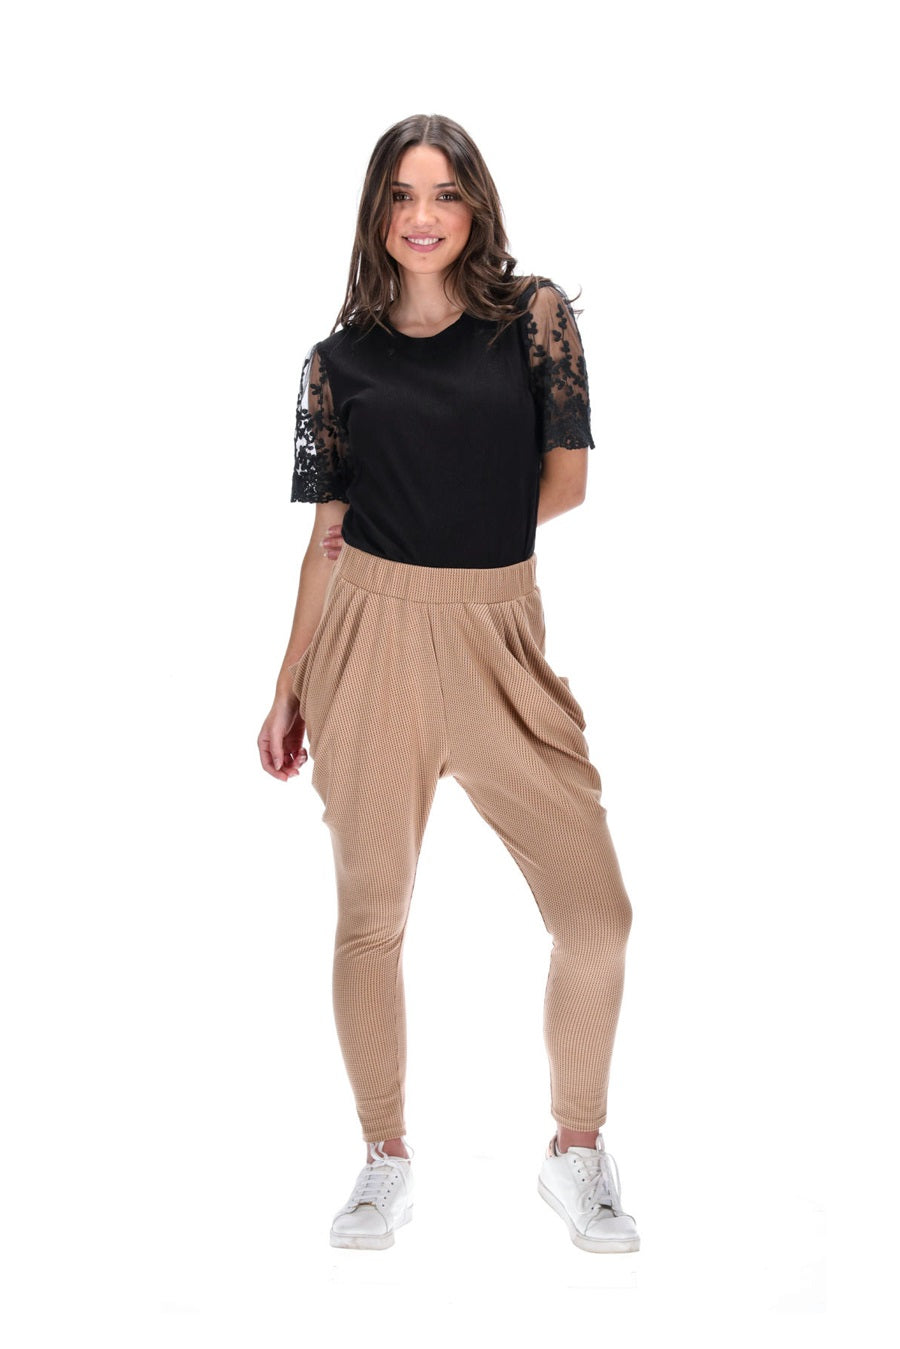 Shop Women's Pants on Sale Online in NZ